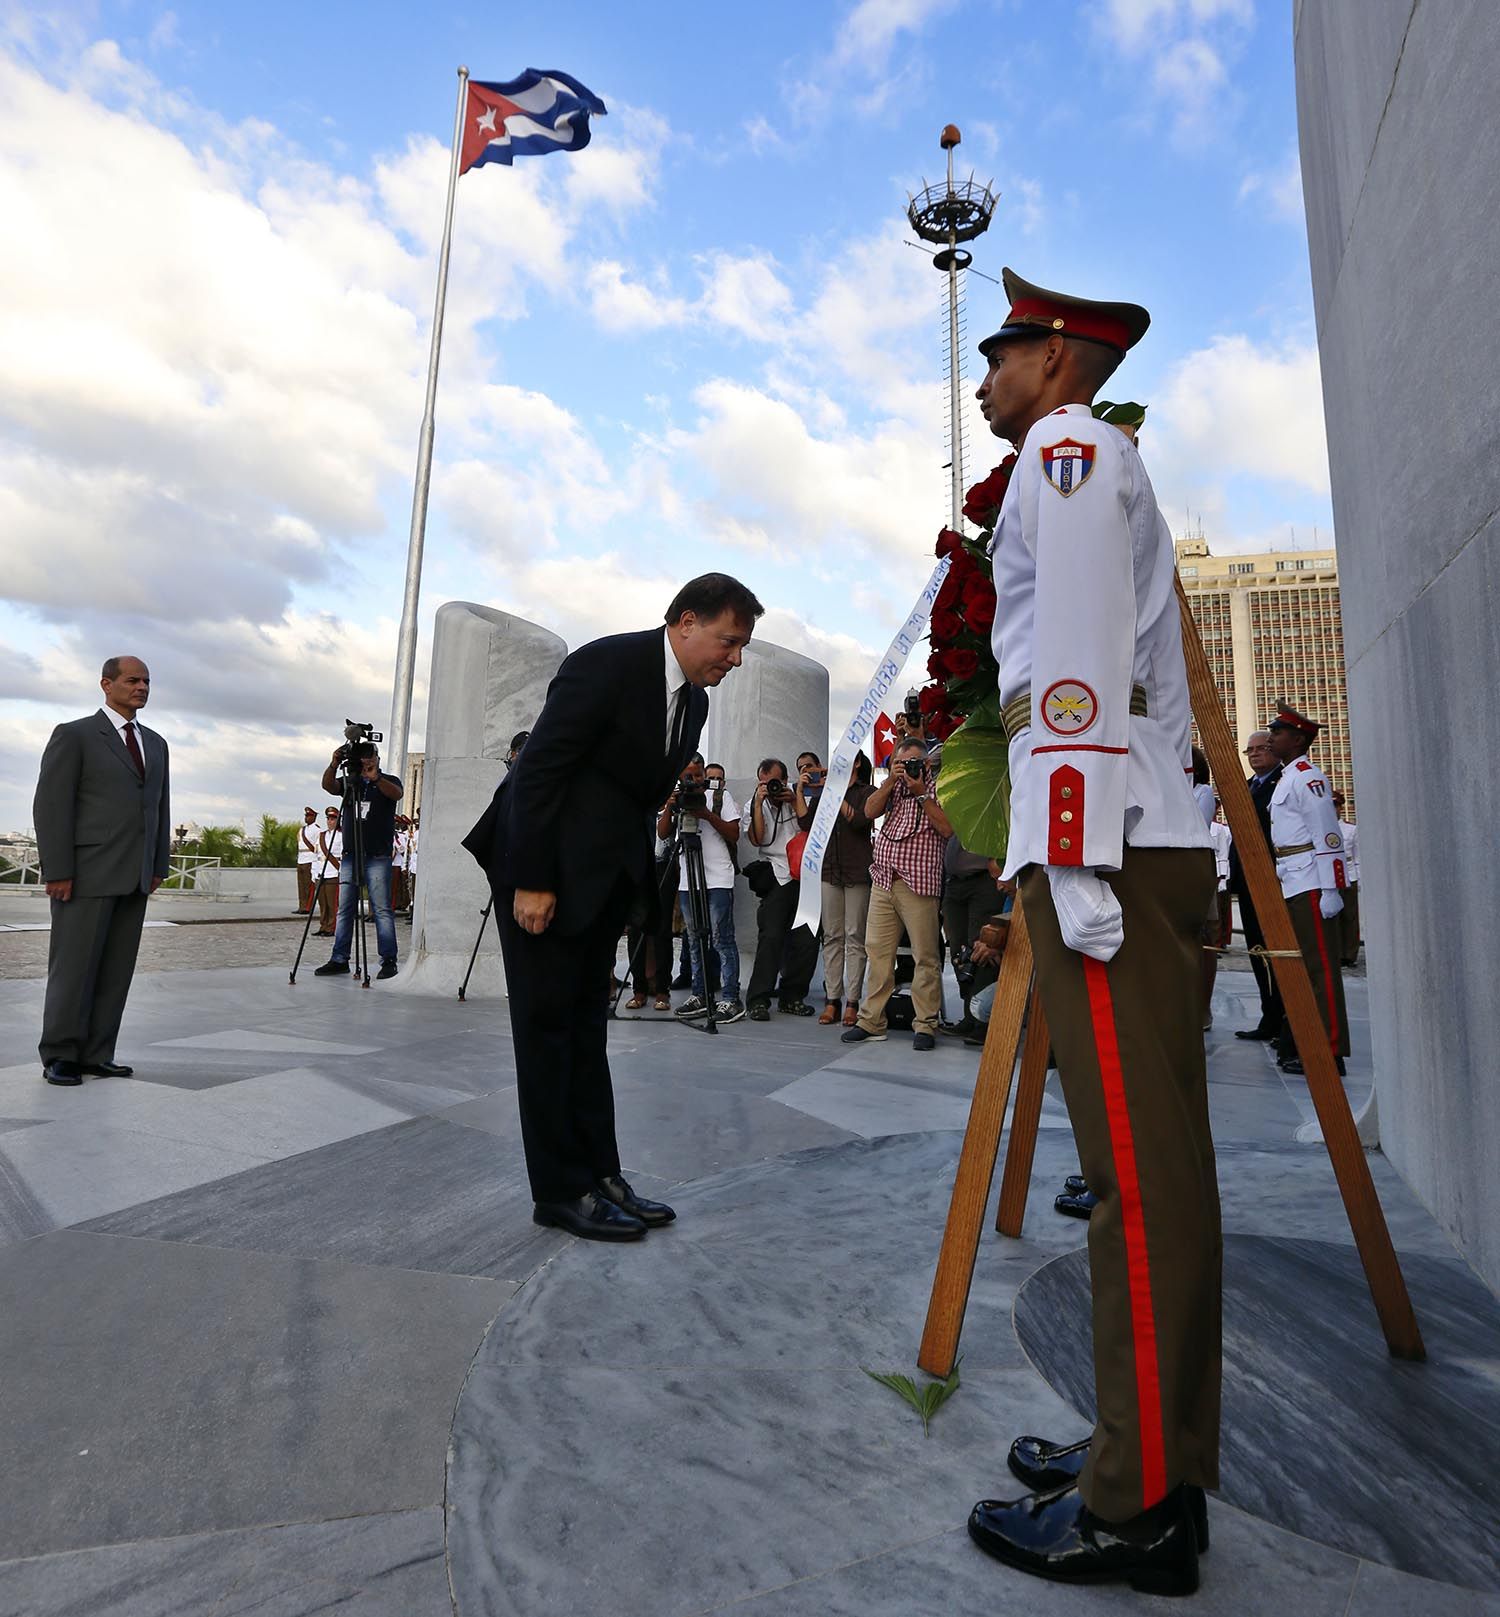 El presidente de Panamá, Juan Carlos Varela (c), rinde tributo a José Martí con una ofrenda floral en el memorial en honor del héroe cubano en la Plaza de la Revolución, en La Habana, este lunes 29 de octubre de 2018. Foto: Ernesto Mastrascusa / EFE.